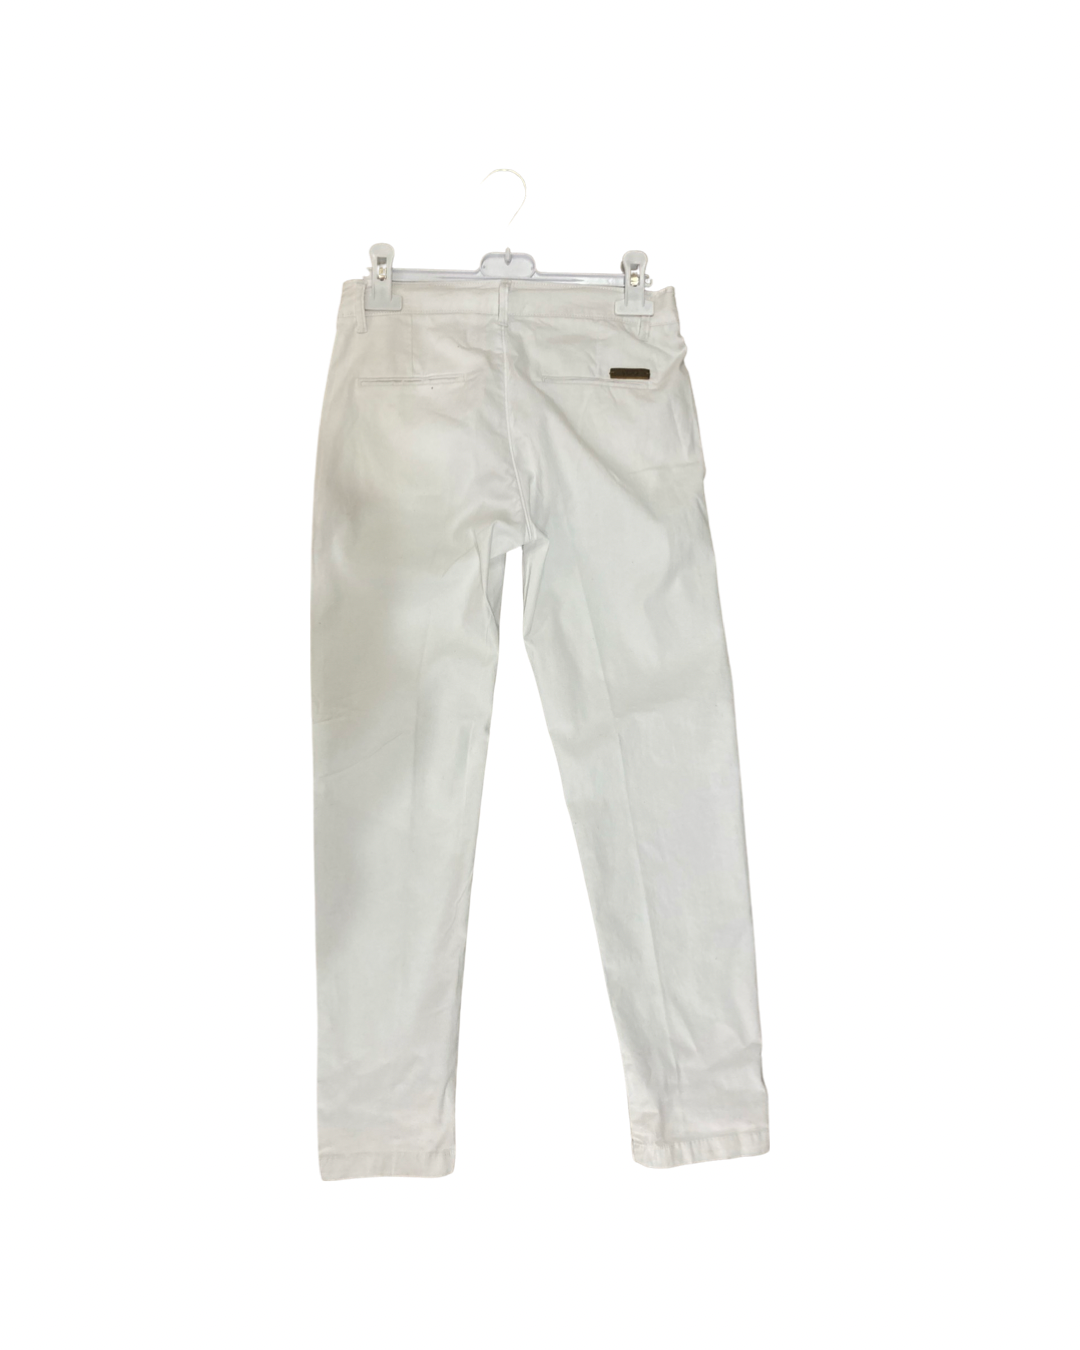 pantalone , Pantalone Bianco stretch in cotone per Ragazzo da 8anni a 16anni Y-Clu BY9105 - BabyBimbo 0-16, abbigliamento bambini